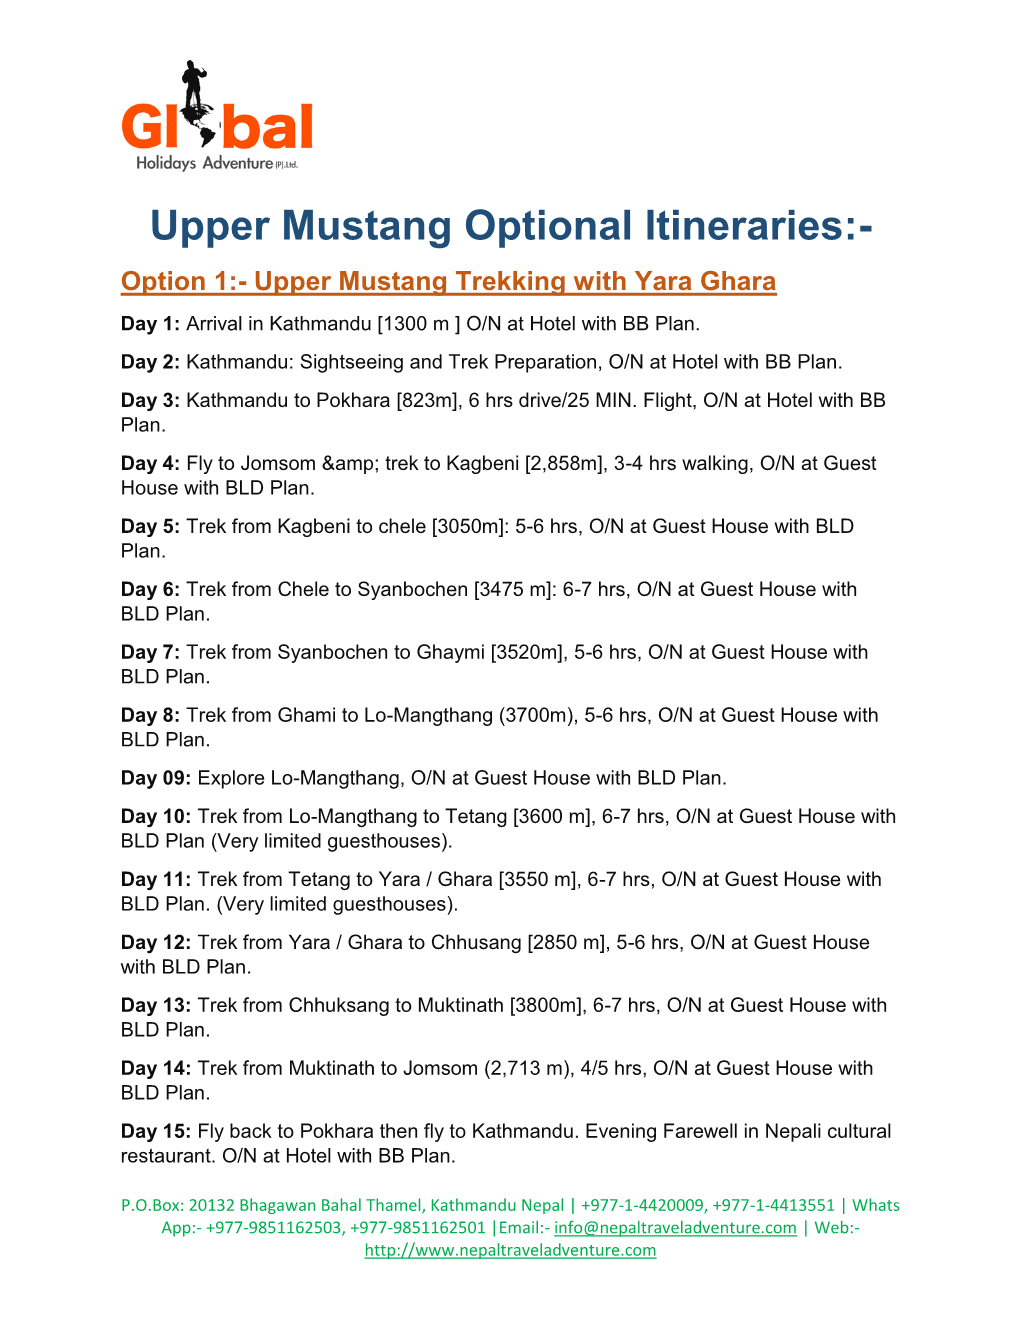 Upper Mustang Optional Itineraries with Yara Ghara